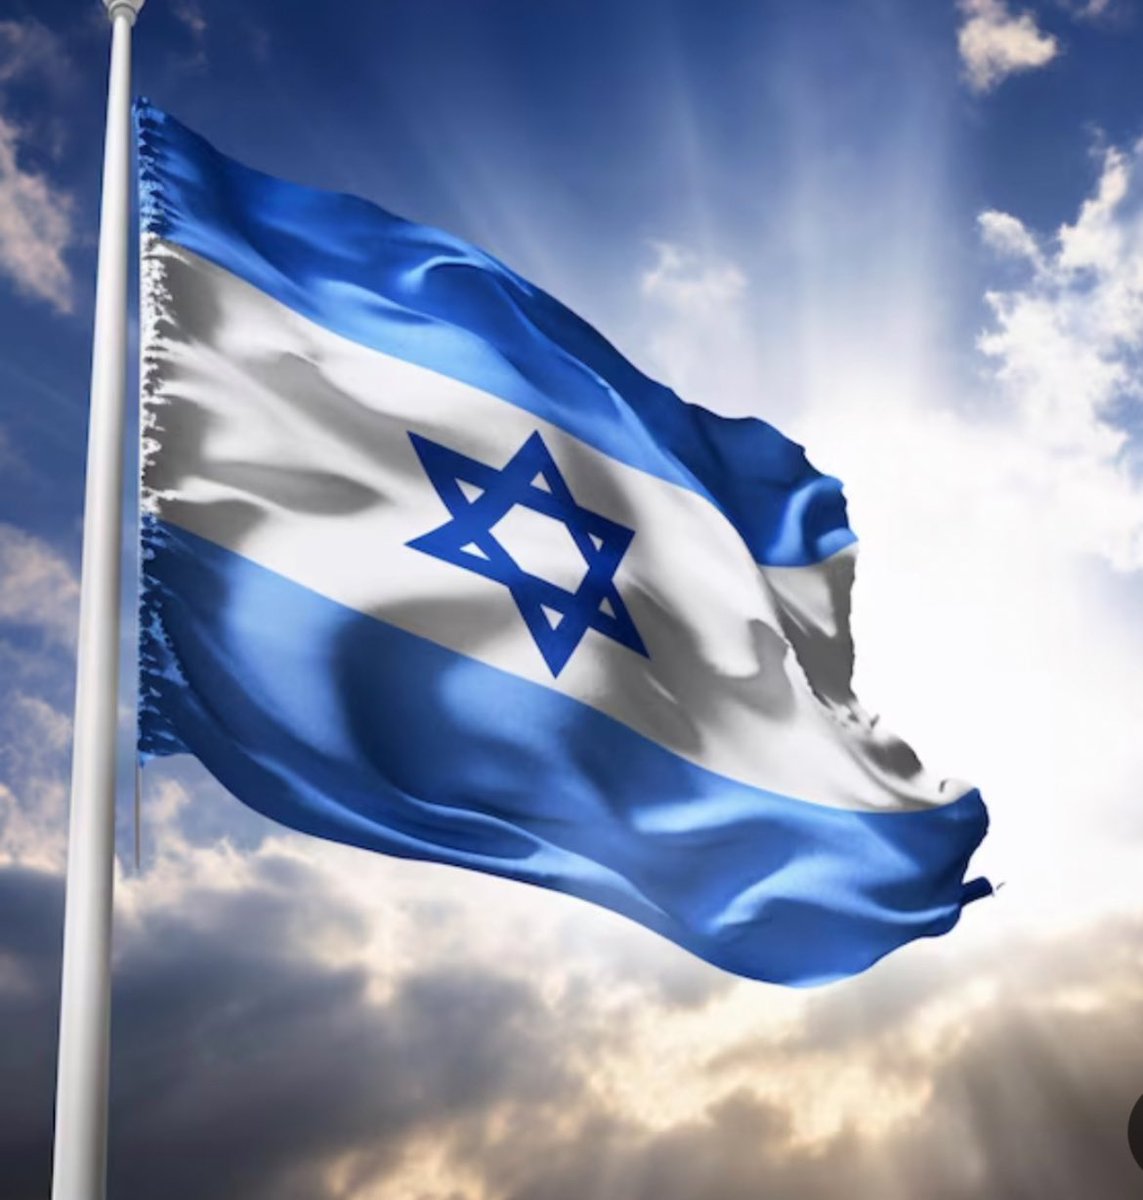 ¡Shabat Shalom! Que la paz, la felicidad y la prosperidad llenen al pueblo de Israel. Oremos por la victoria y un futuro brillante. 🕊️✨ #ShabatShalom #PazParaIsrael #FelicidadYProsperidad